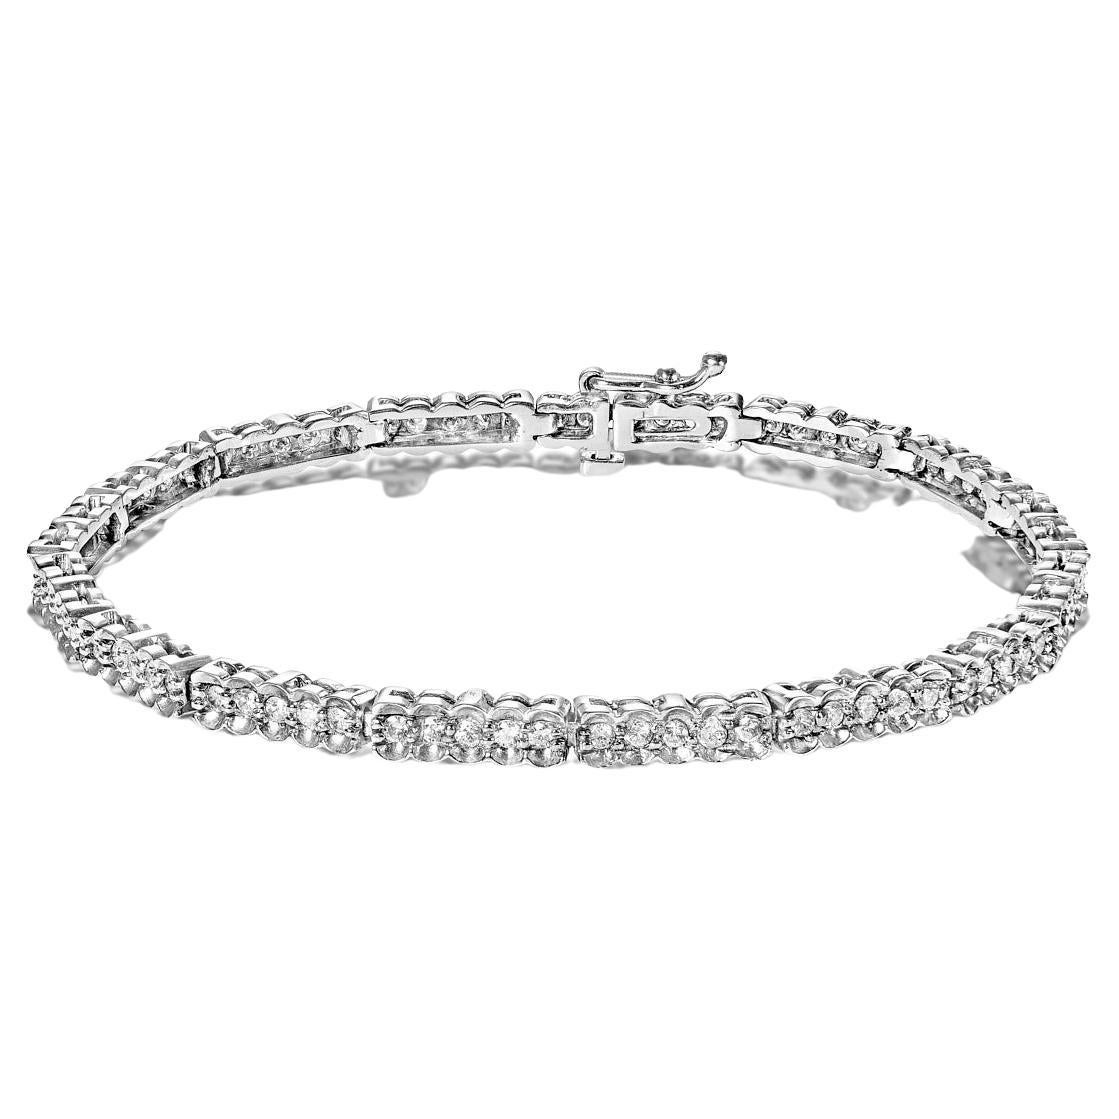 Bracelet tennis à double rangée de diamants ronds et brillants de 2 carats avec demi-lune certifiés